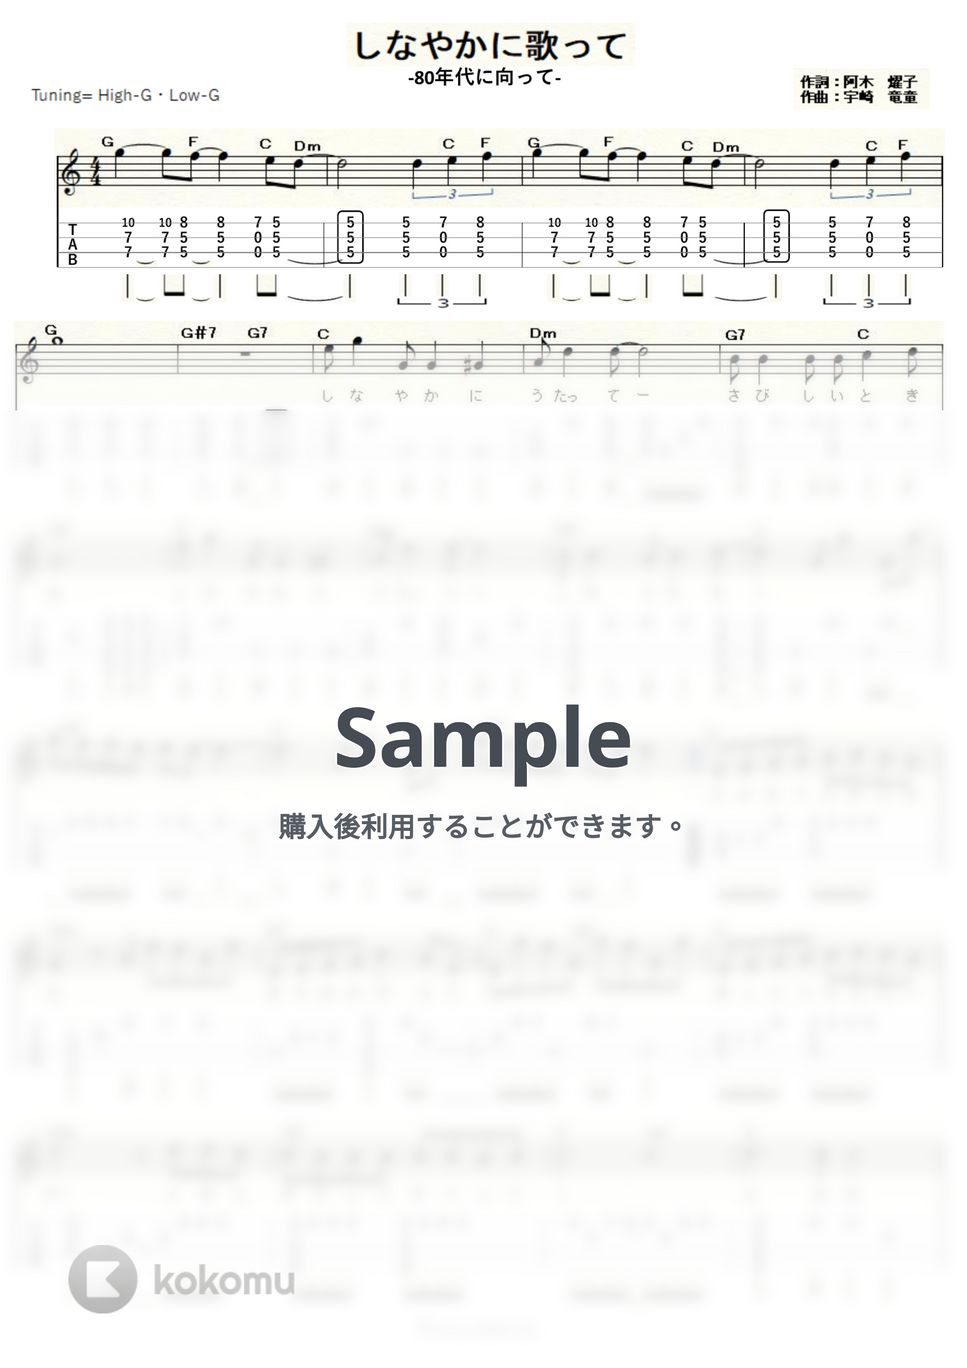 山口百恵 - しなやかに歌って～80年代に向って～ (ｳｸﾚﾚｿﾛ / High-G,Low-G / 中級) by ukulelepapa